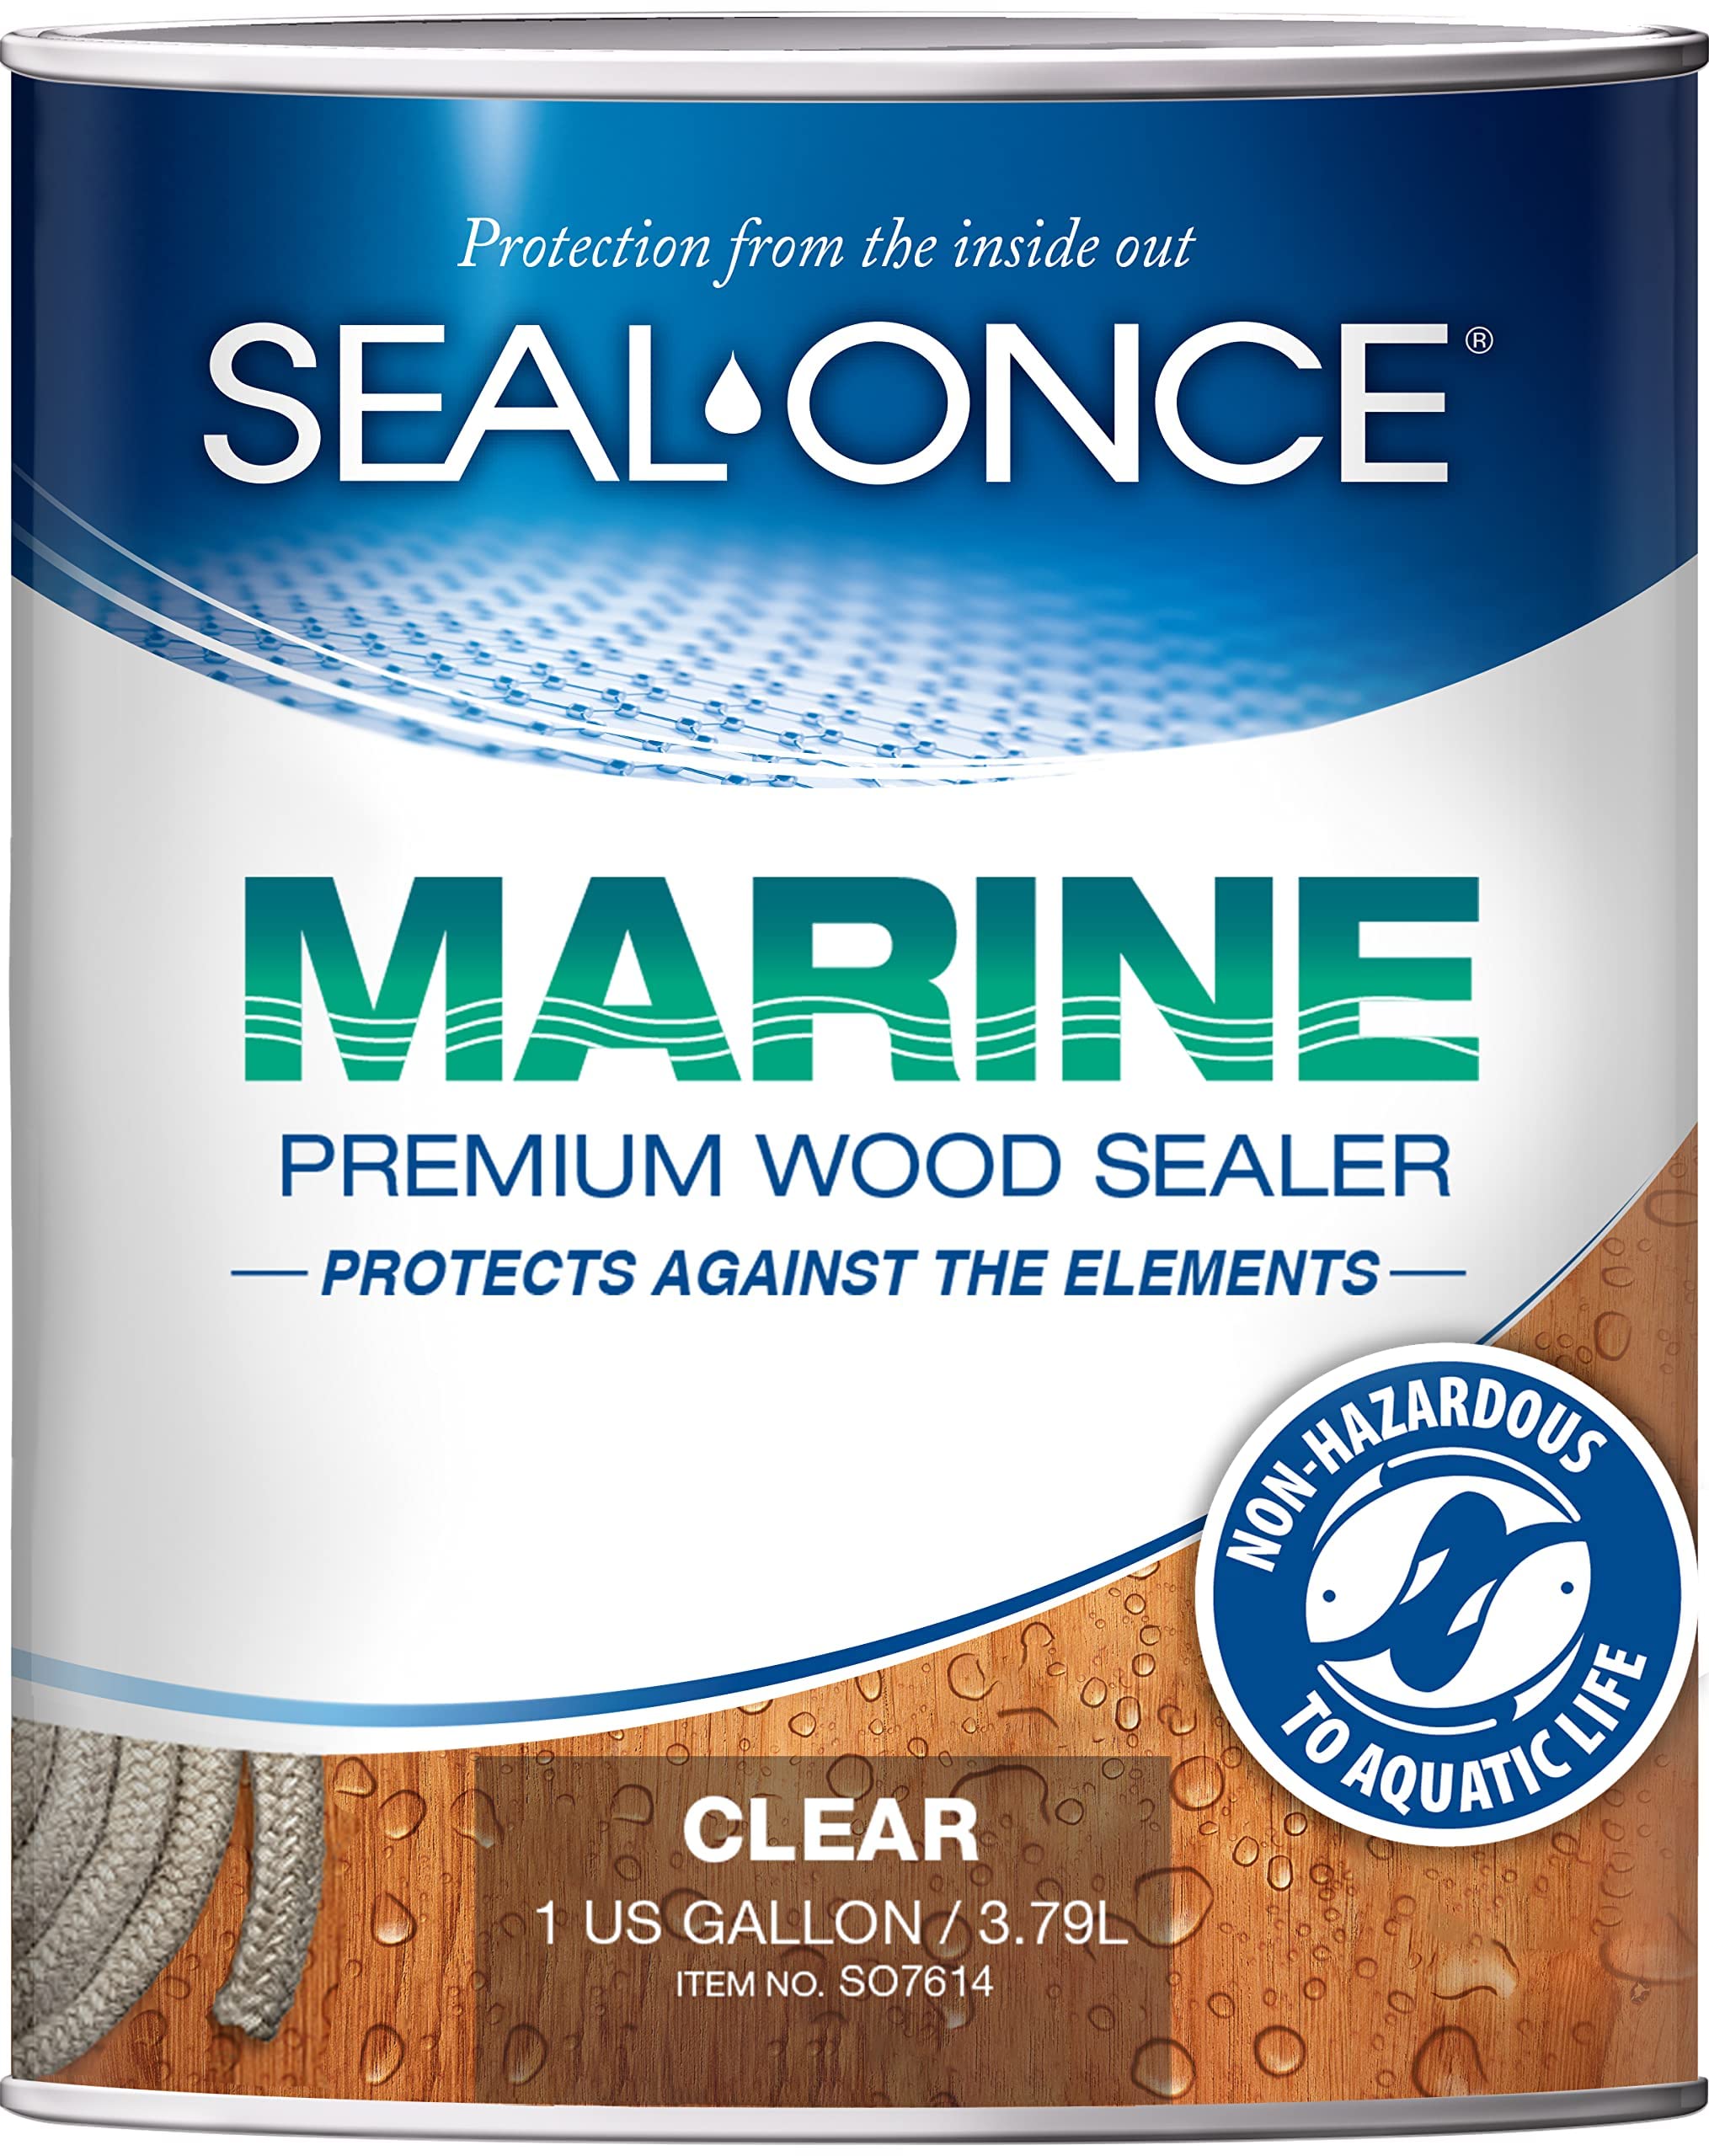 Seal-Once Marine Premium Wood Sealer - водостойкий герметик - морилка и герметик в одном - 1 галлон и прозрачный